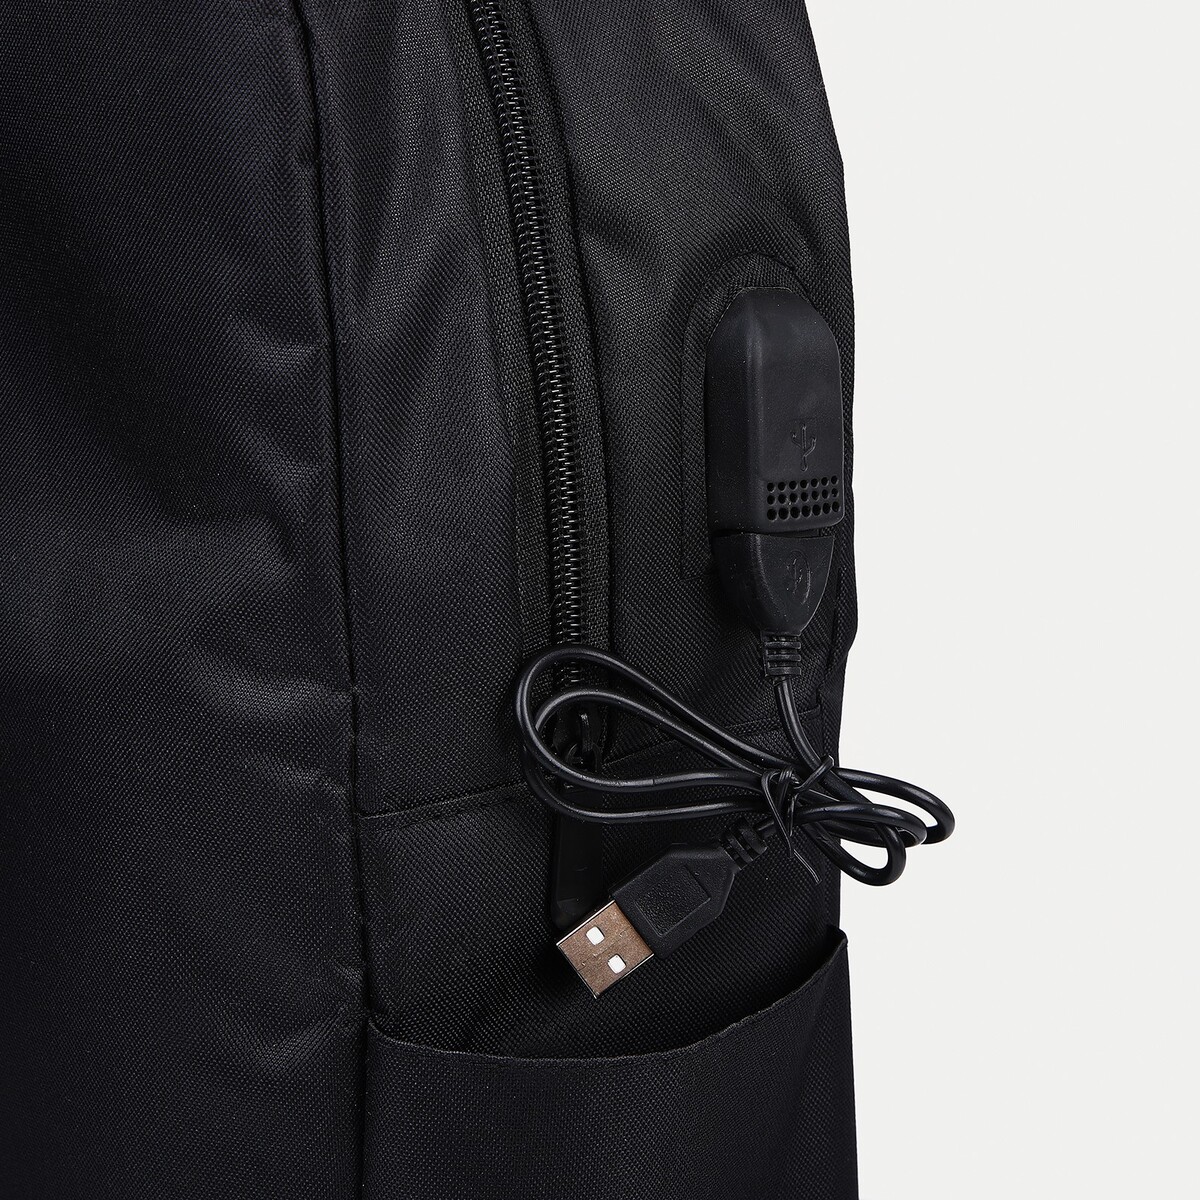 Рюкзак мега, 30*12*41 см, отд на молнии, usb, набор сумка, косметичка, черный No brand 02351197 - фото 6